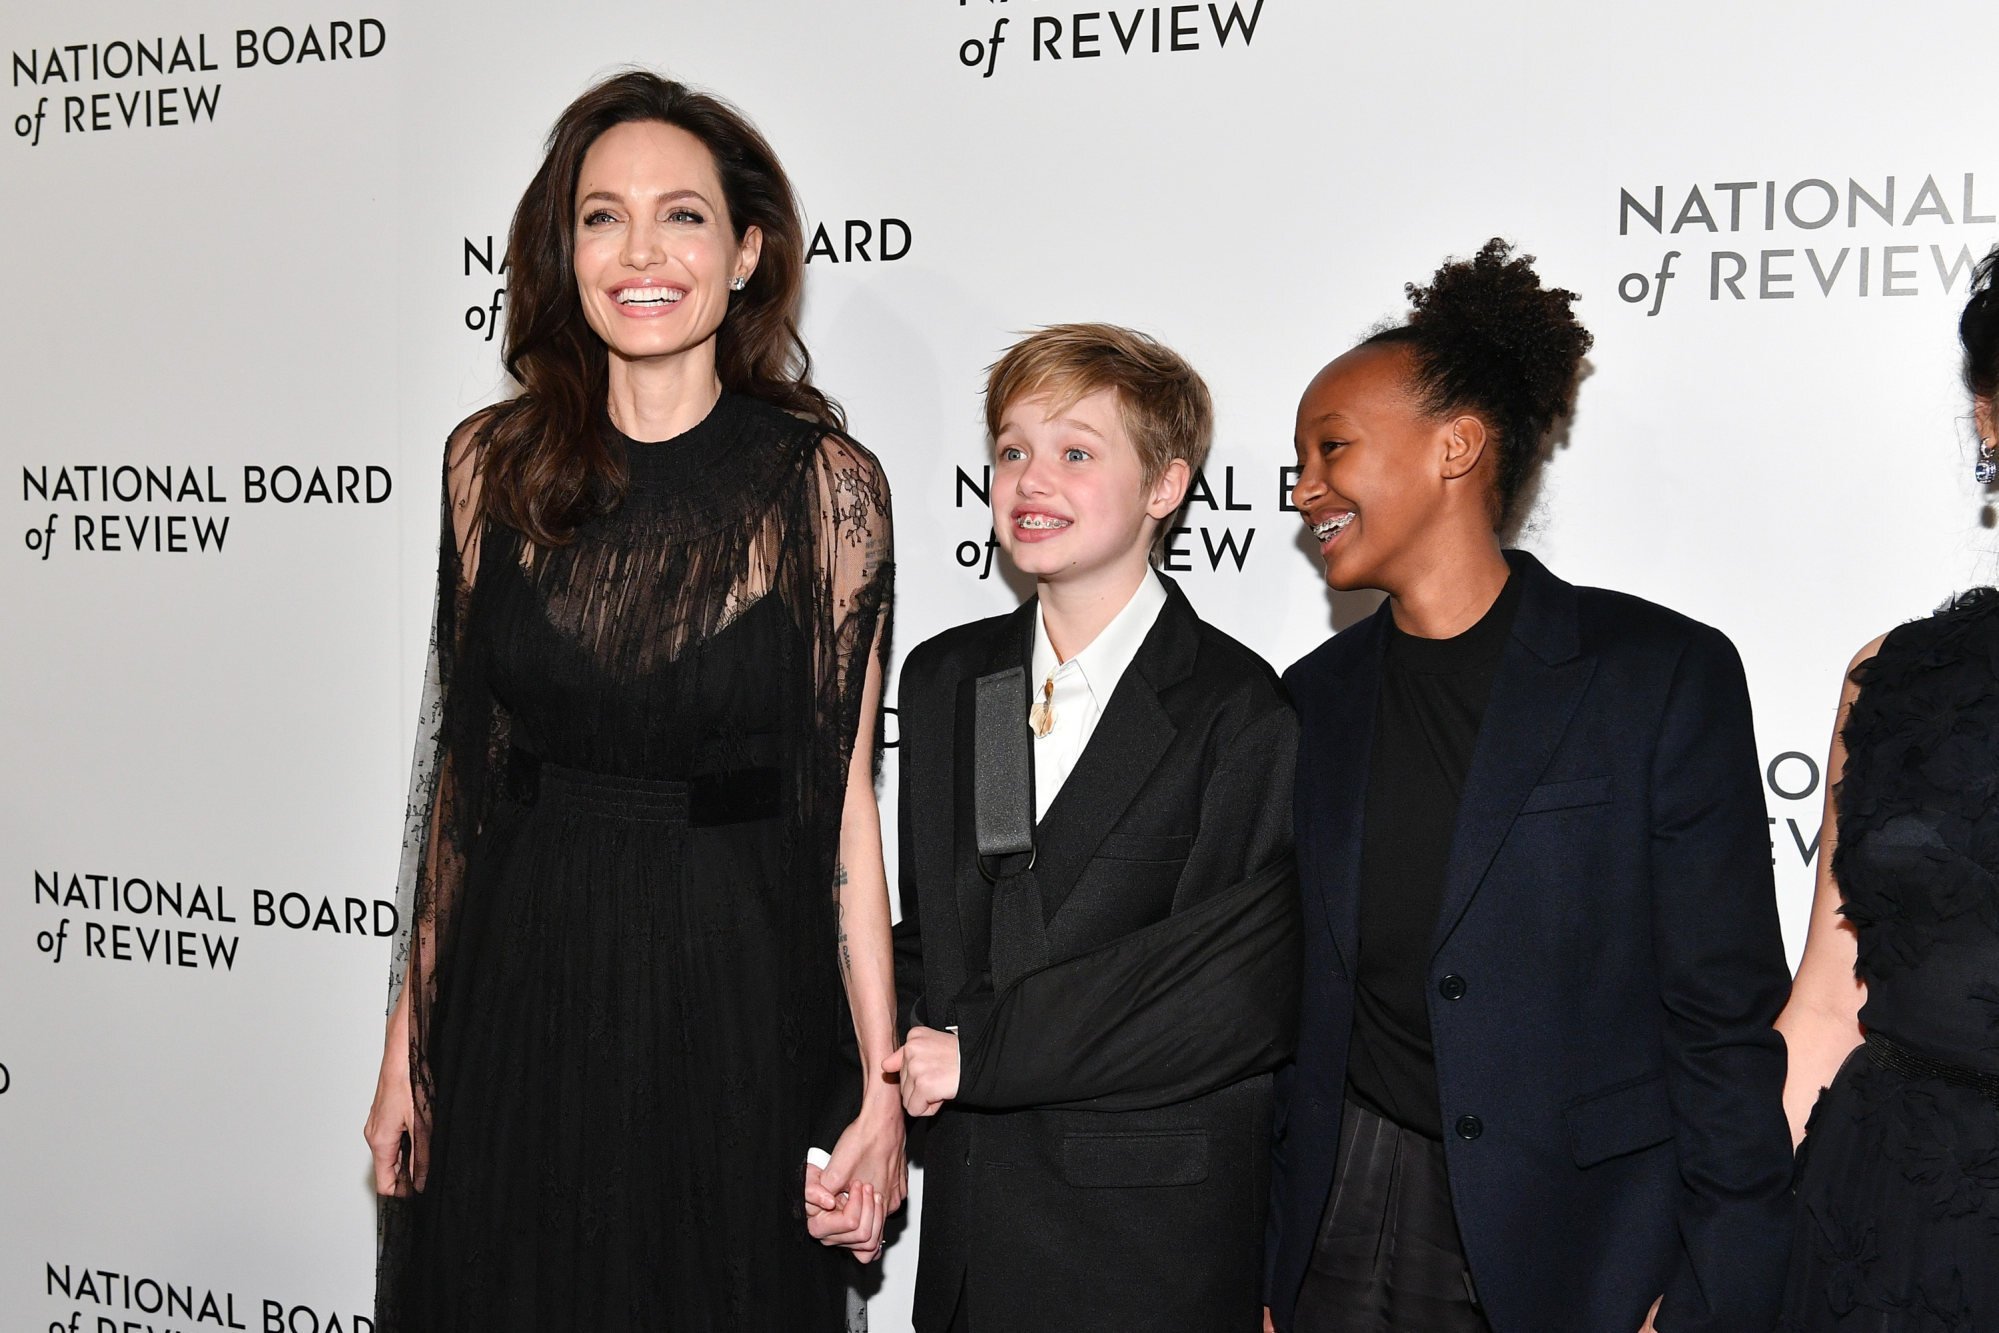 Ai đã khiến con gái Angelina Jolie 'lột xác' từ tomboy thành nữ thần thảm đỏ?